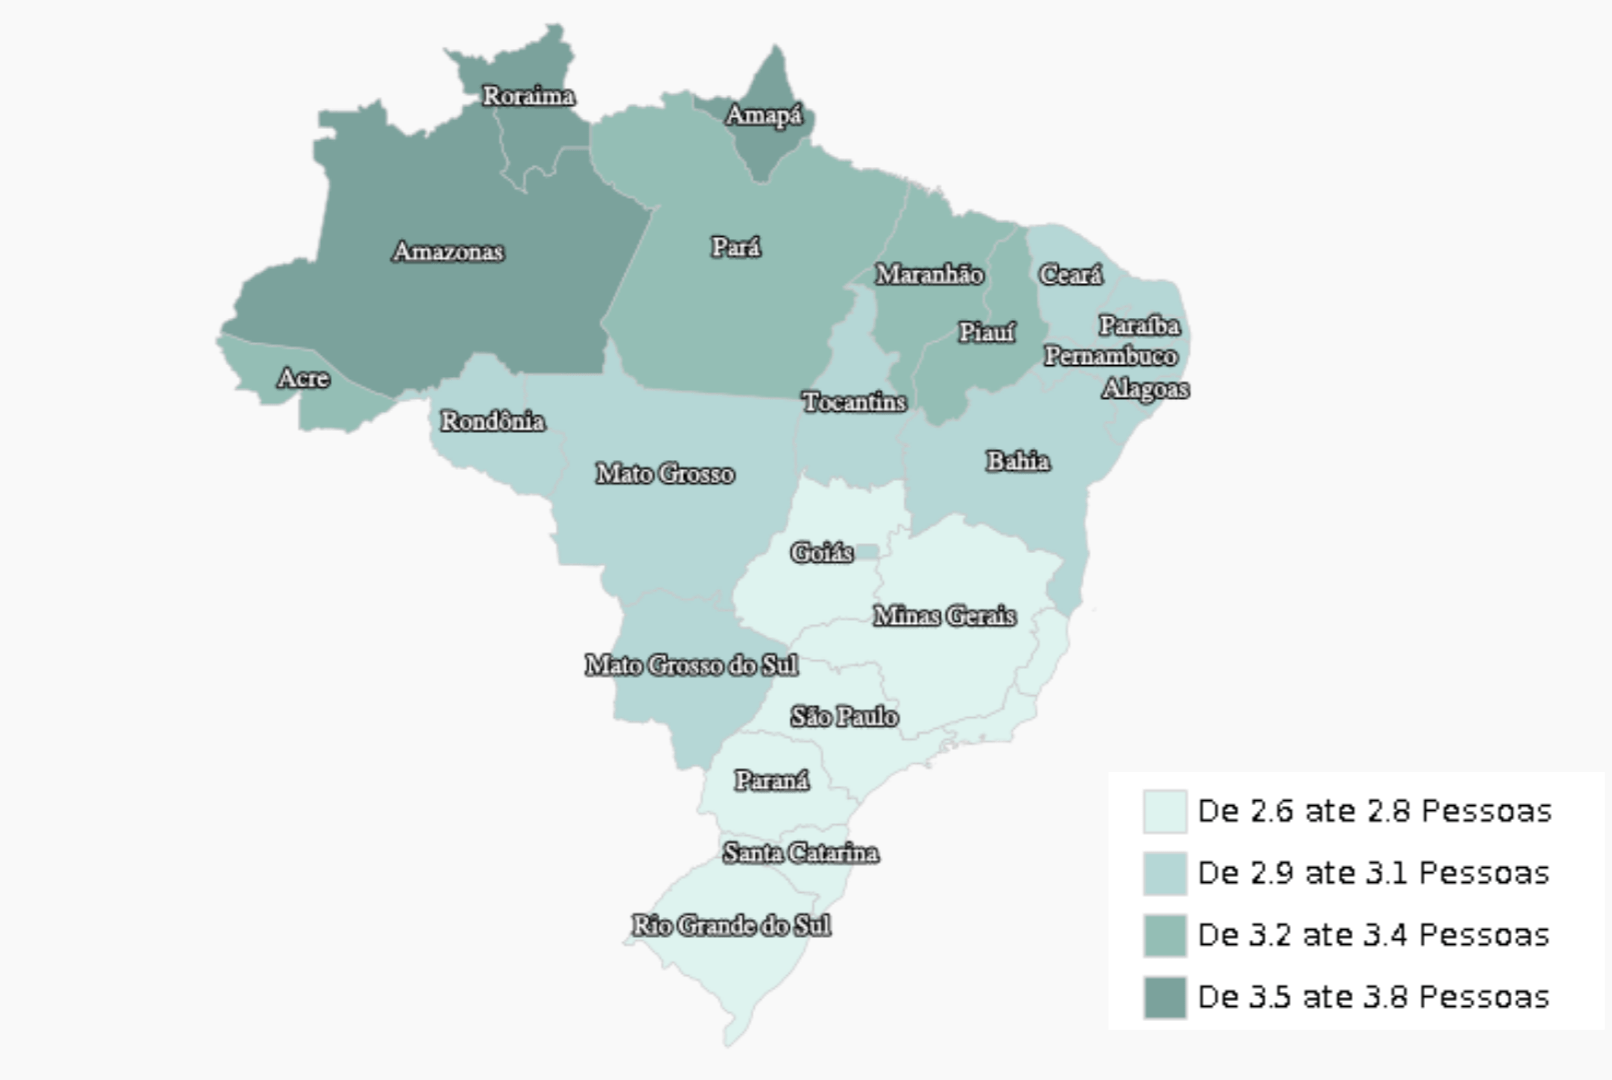  Mapa do Brasil mostrando a quantidade média, por estado, de pessoas que vivem em um mesmo domicílio. O Noroeste do país concentra taxas de até 3,8 pessoas por domicílio, enquanto os estados do sudeste possui taxas de até 2,8 pessoas por domicílio.